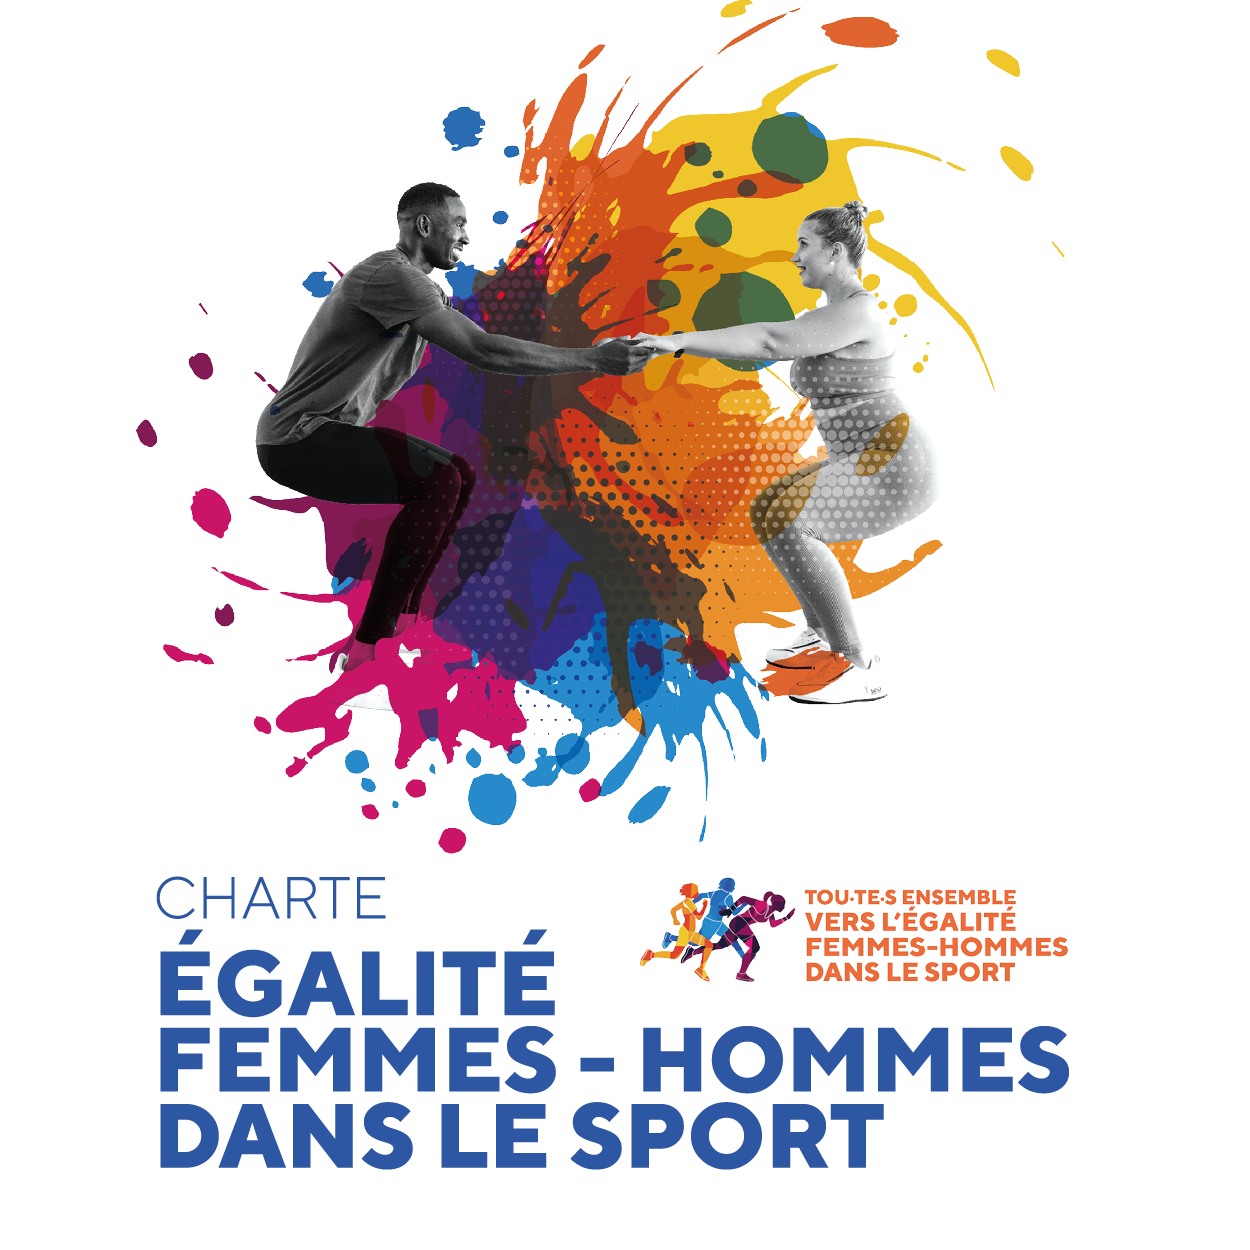 Workshop « Ensemble vers l’égalité dans le sport »